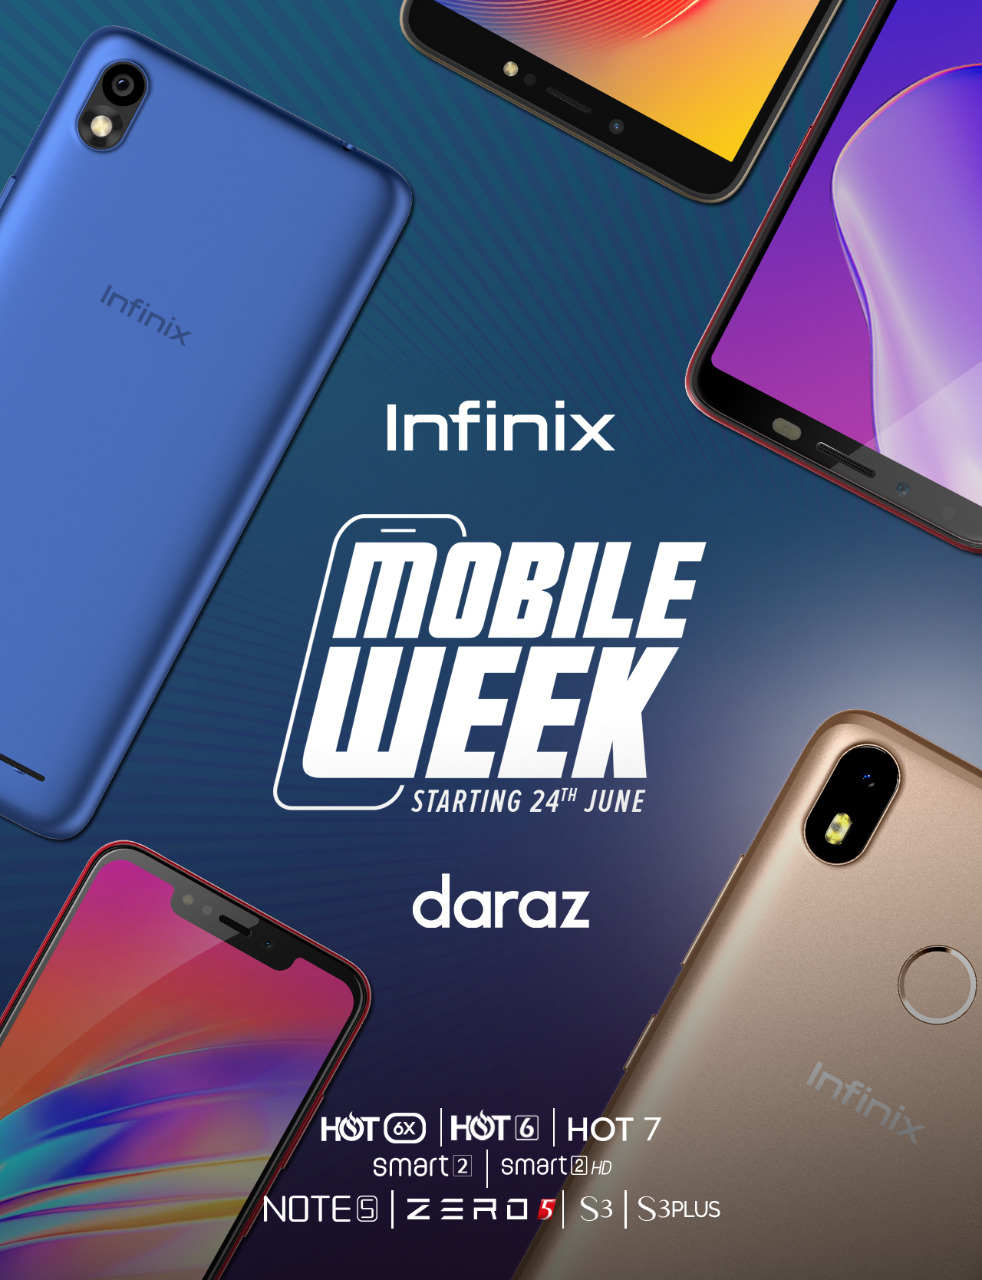 Infinix Daraz Mobile Week